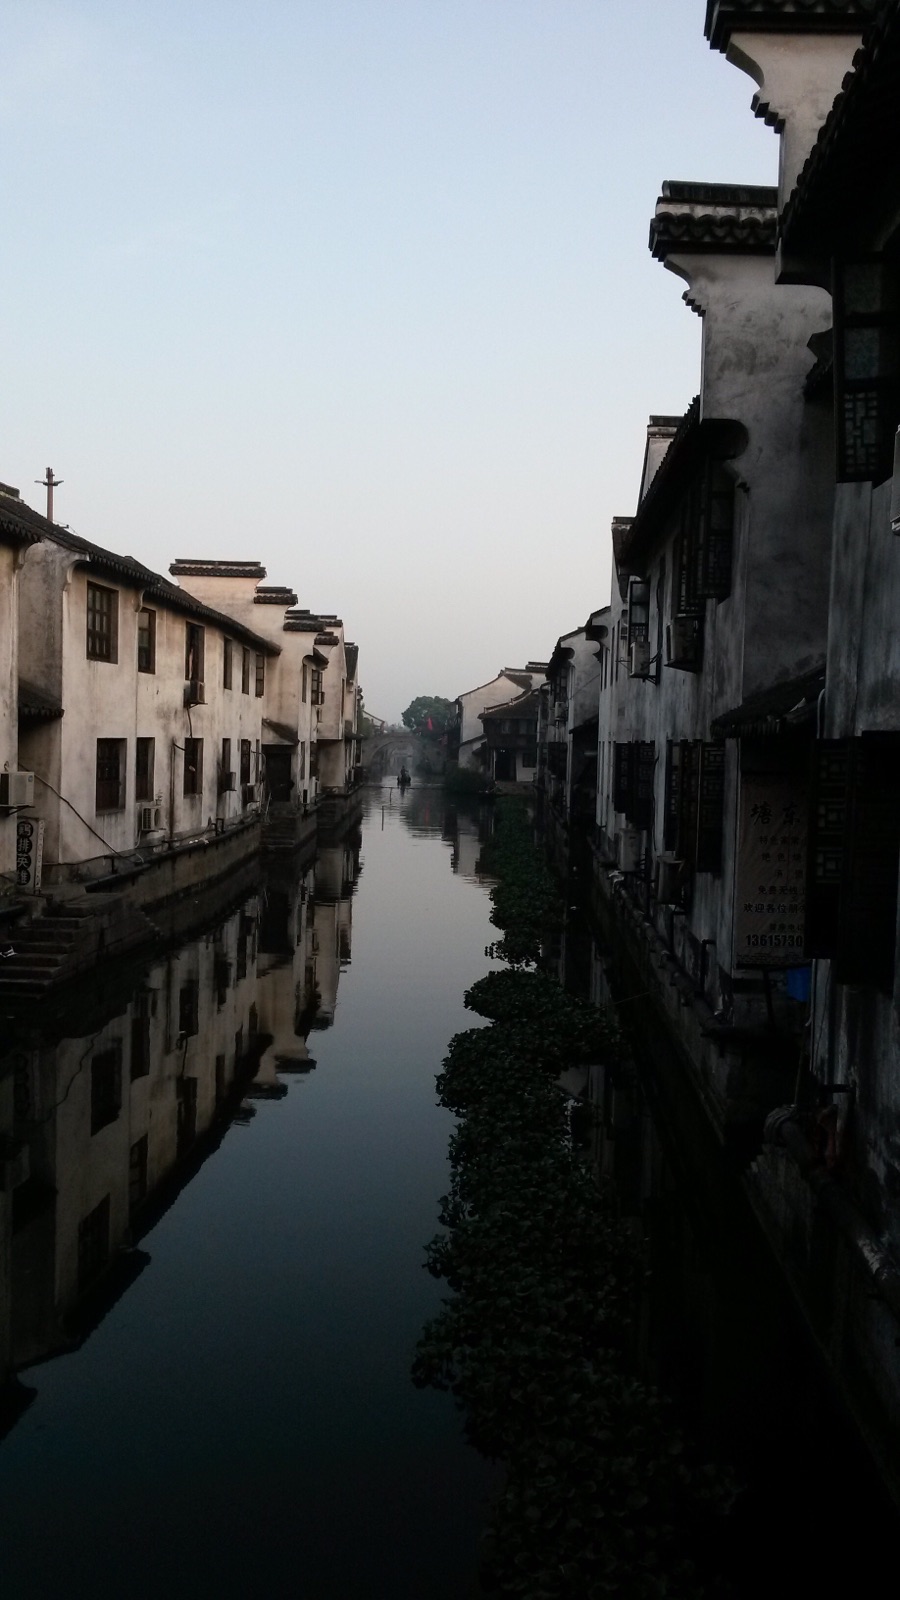 繁华的上海边上，有这样一个安静的呼吸着的小镇，忽然与她相遇，却熟悉得仿